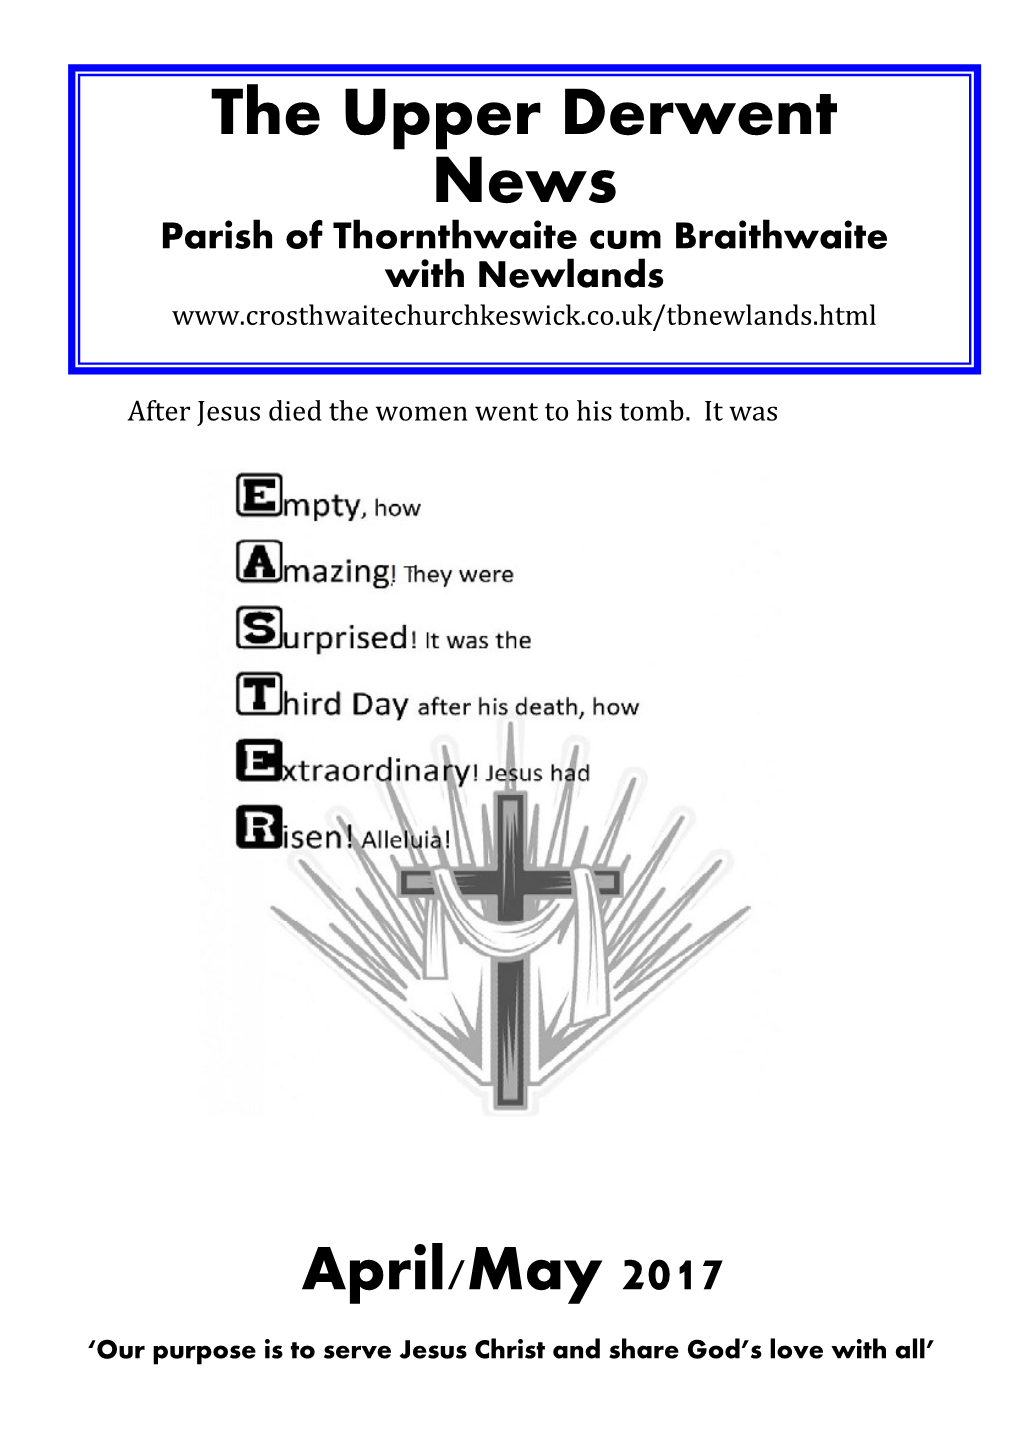 The Upper Derwent News Parish of Thornthwaite Cum Braithwaite with Newlands